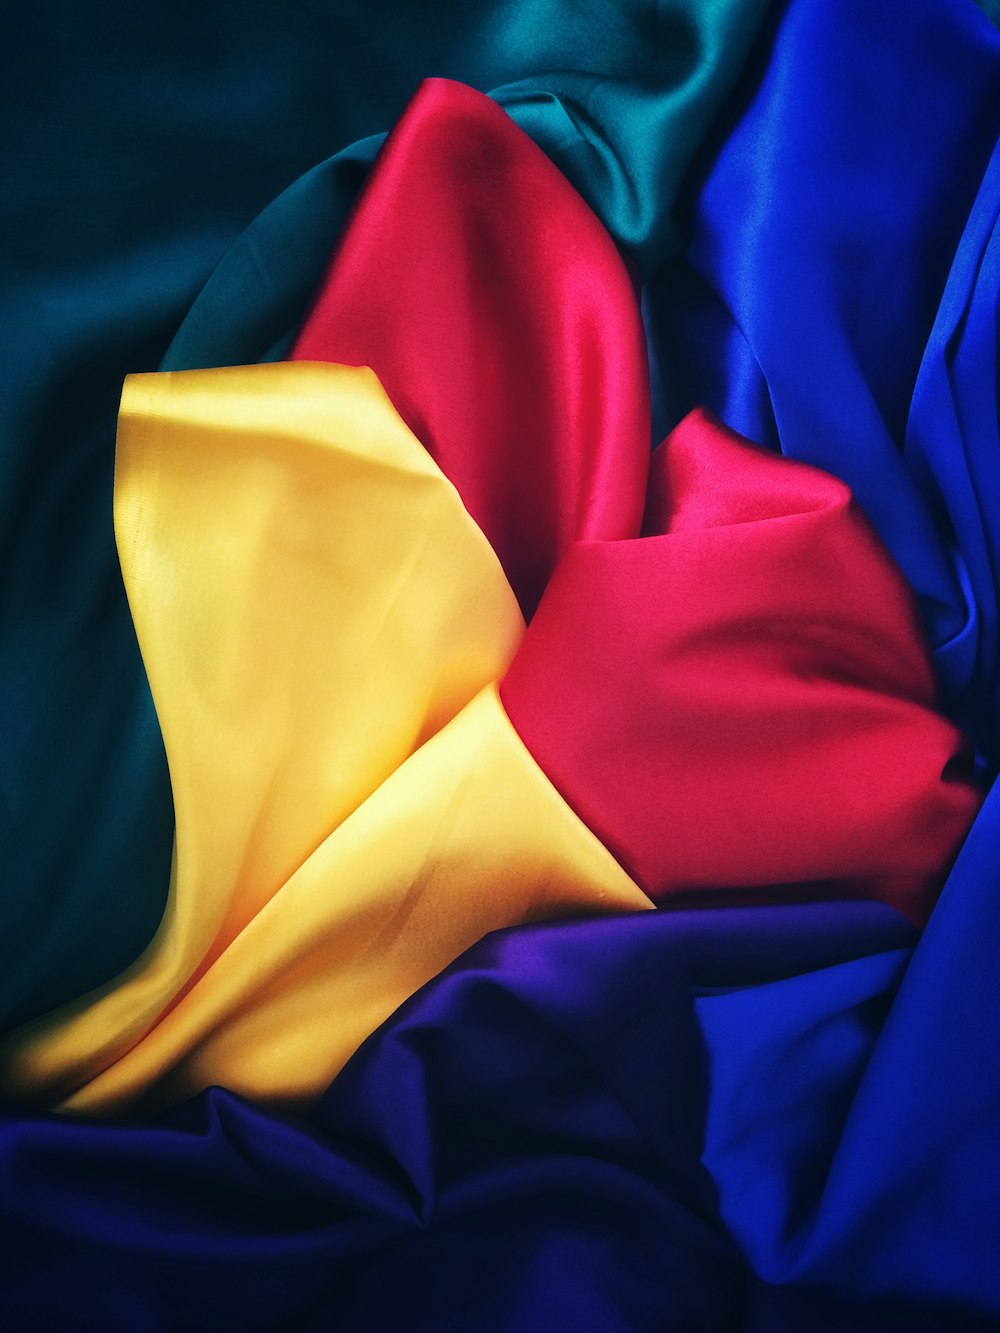 foto de panos de seda vermelhos, amarelos, azuis e verdes